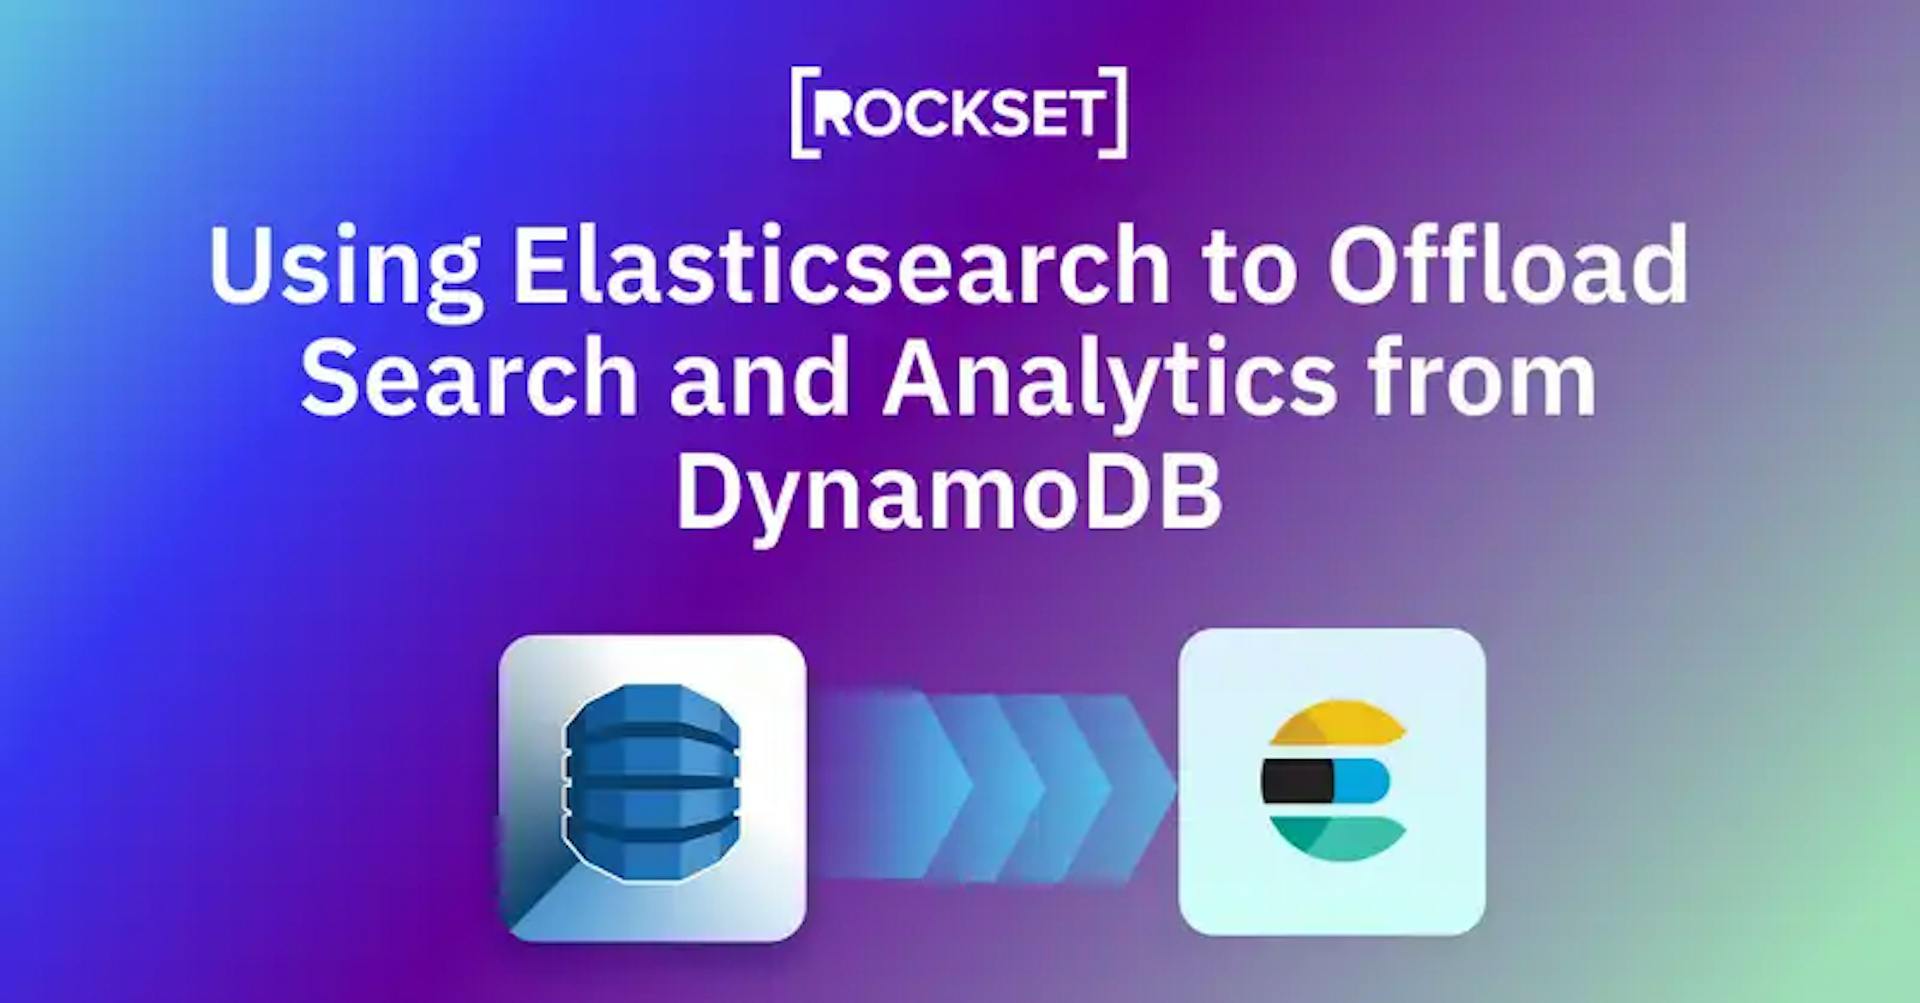 featured image - Utiliser Elasticsearch pour décharger la recherche et l'analyse de DynamoDB : avantages et inconvénients